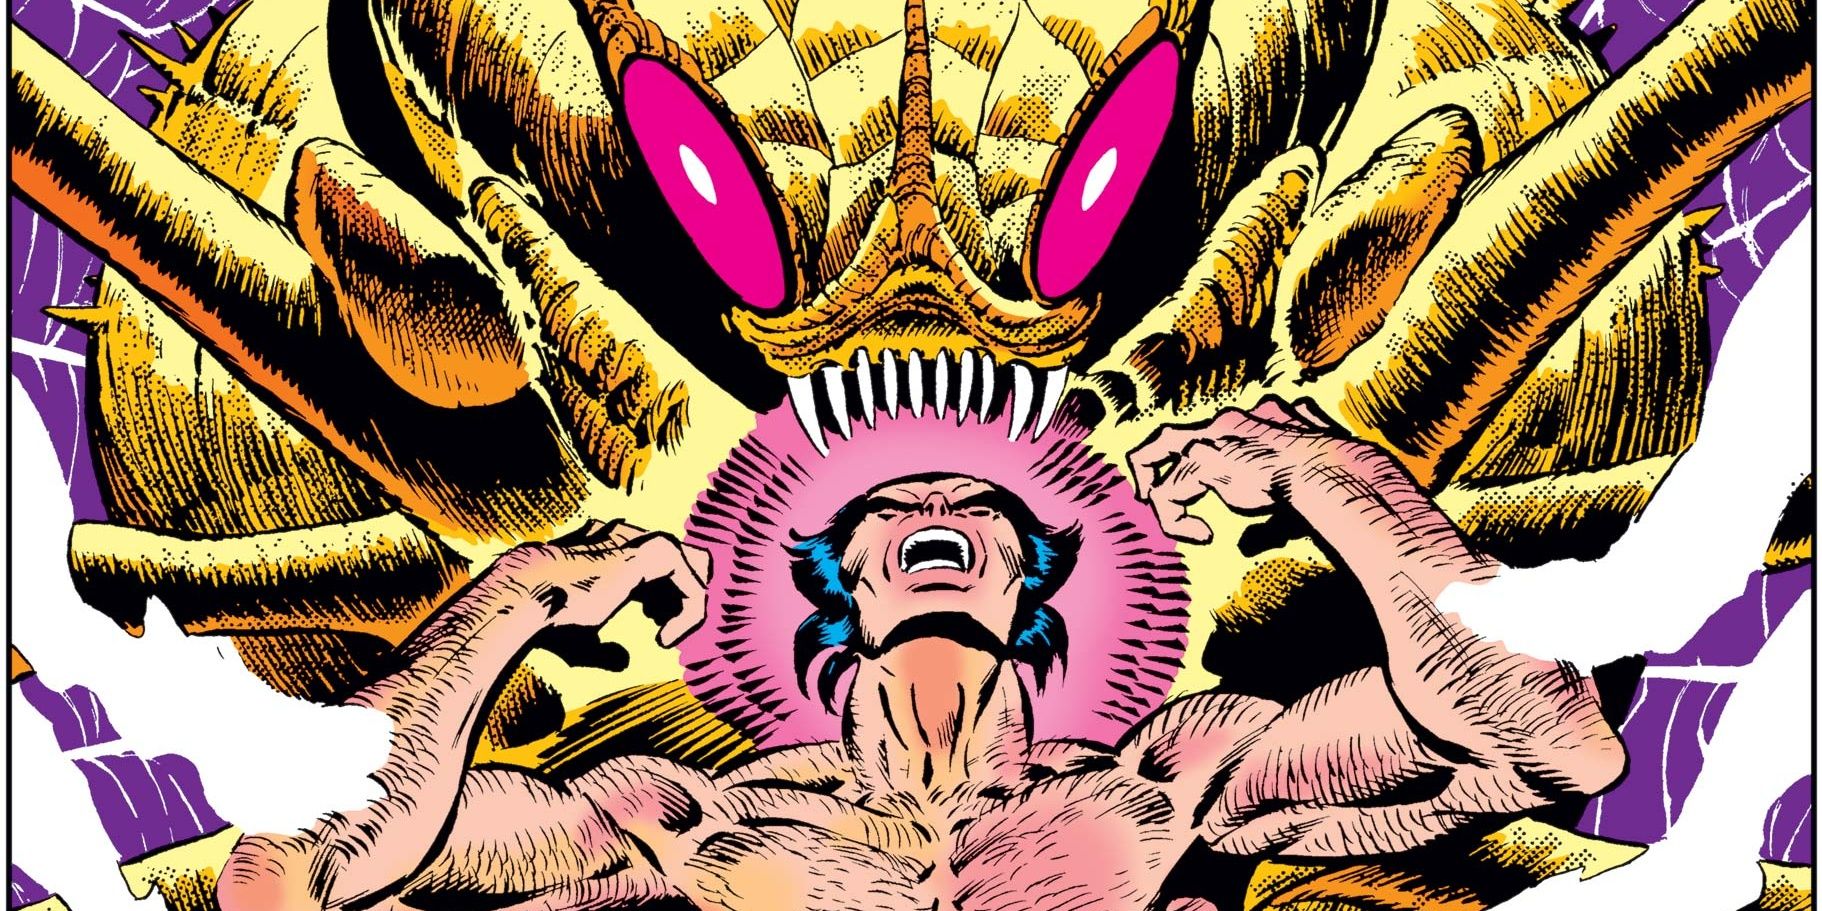 Wolverine versus a member of the alien Brood in Marvel Comics